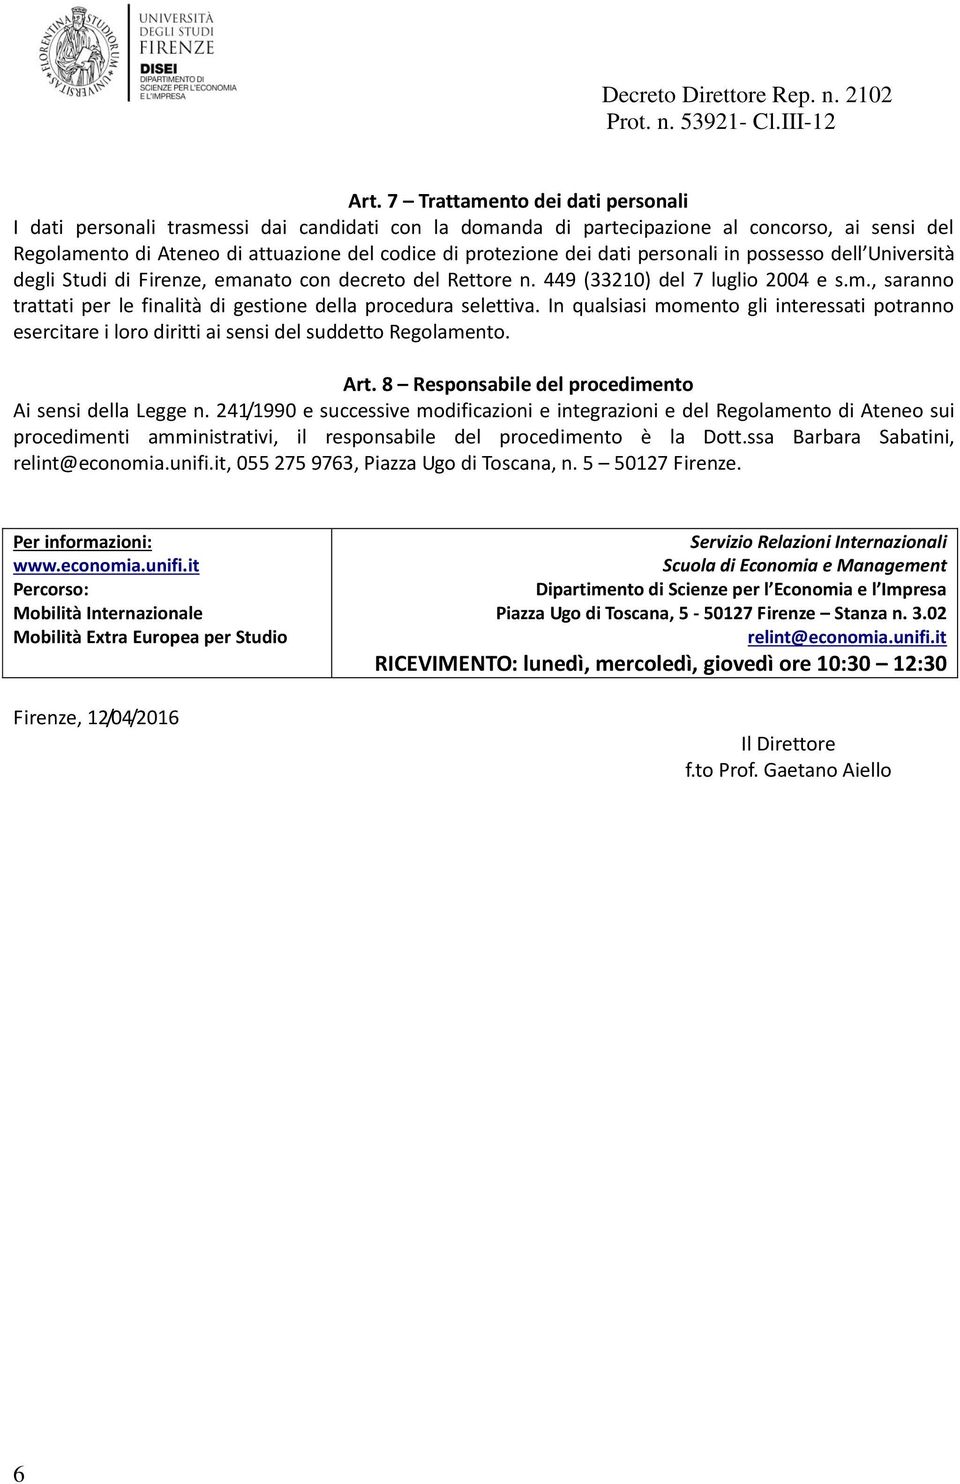 dati personali in possesso dell Università degli Studi di Firenze, emanato con decreto del Rettore n. 449 (33210) del 7 luglio 2004 e s.m., saranno trattati per le finalità di gestione della procedura selettiva.